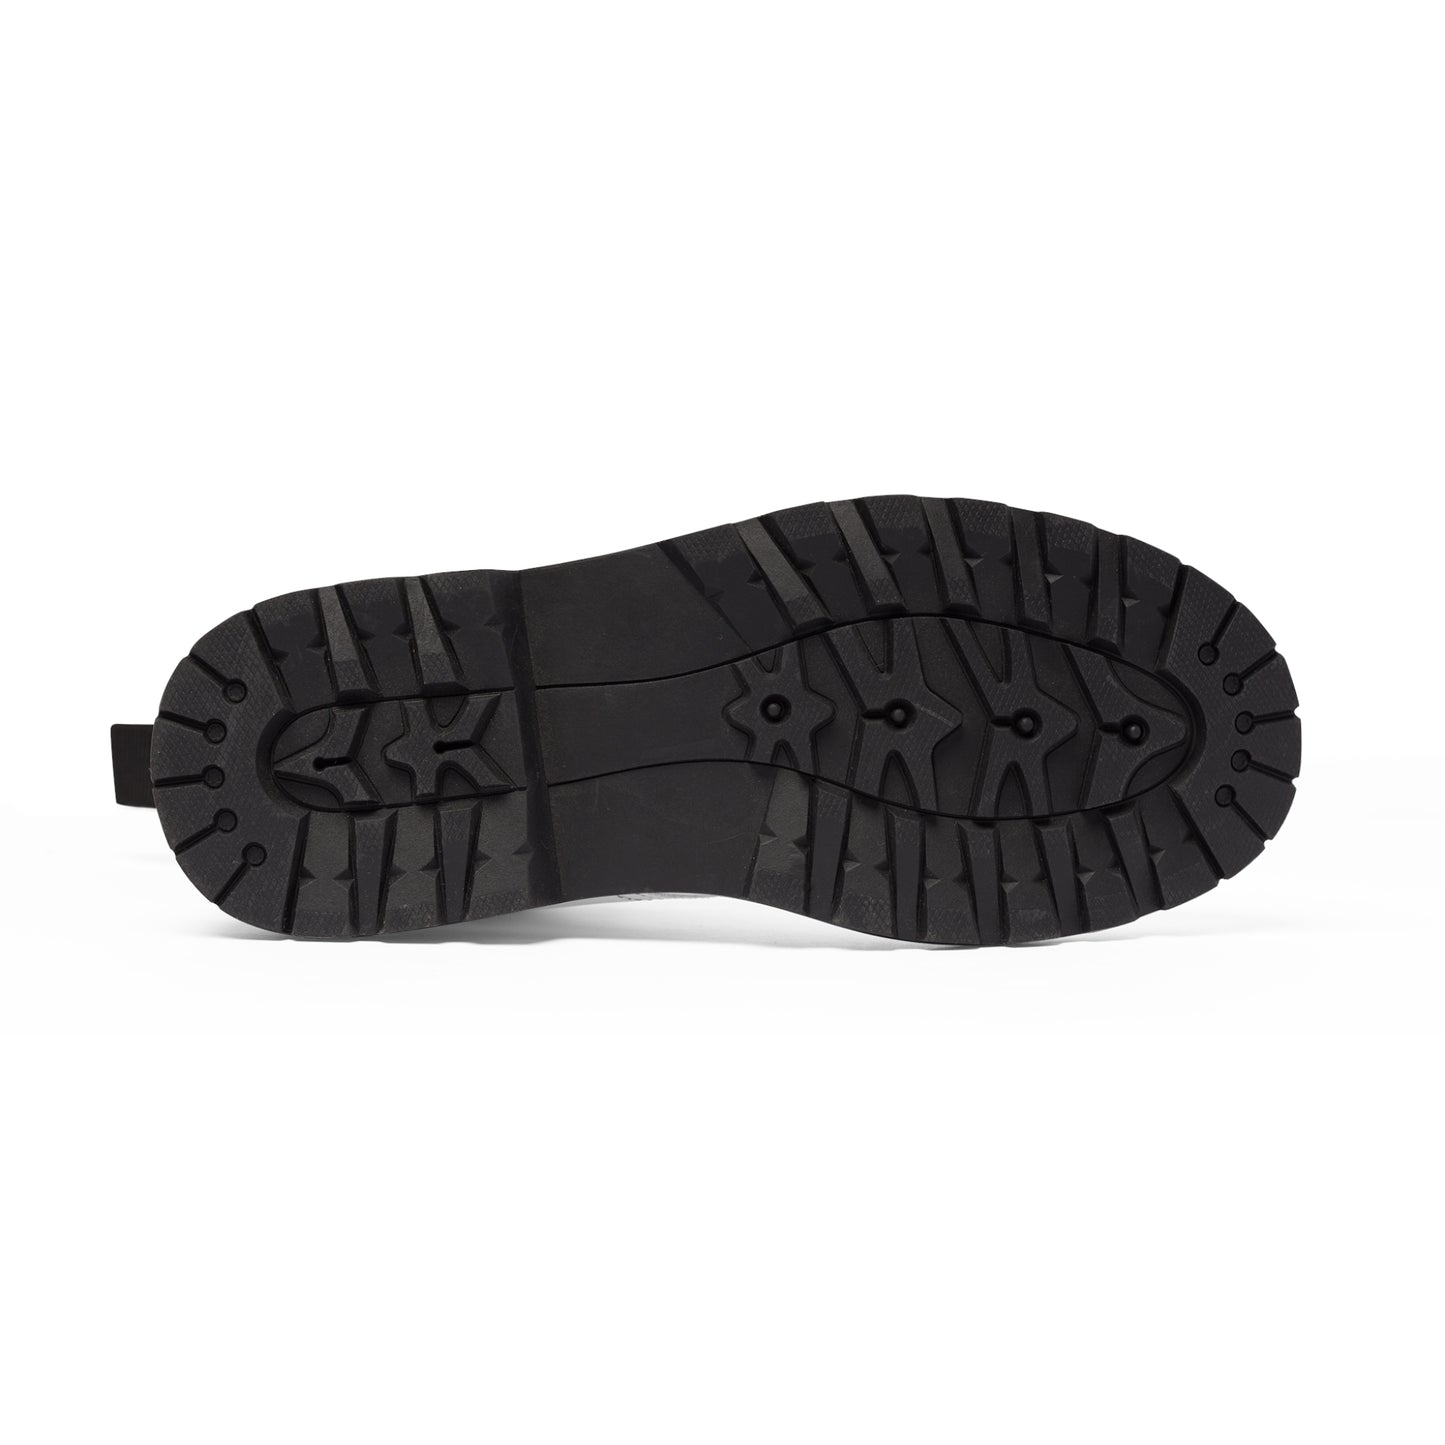 Men's Canvas Boots - 02859 US 10.5 Black sole